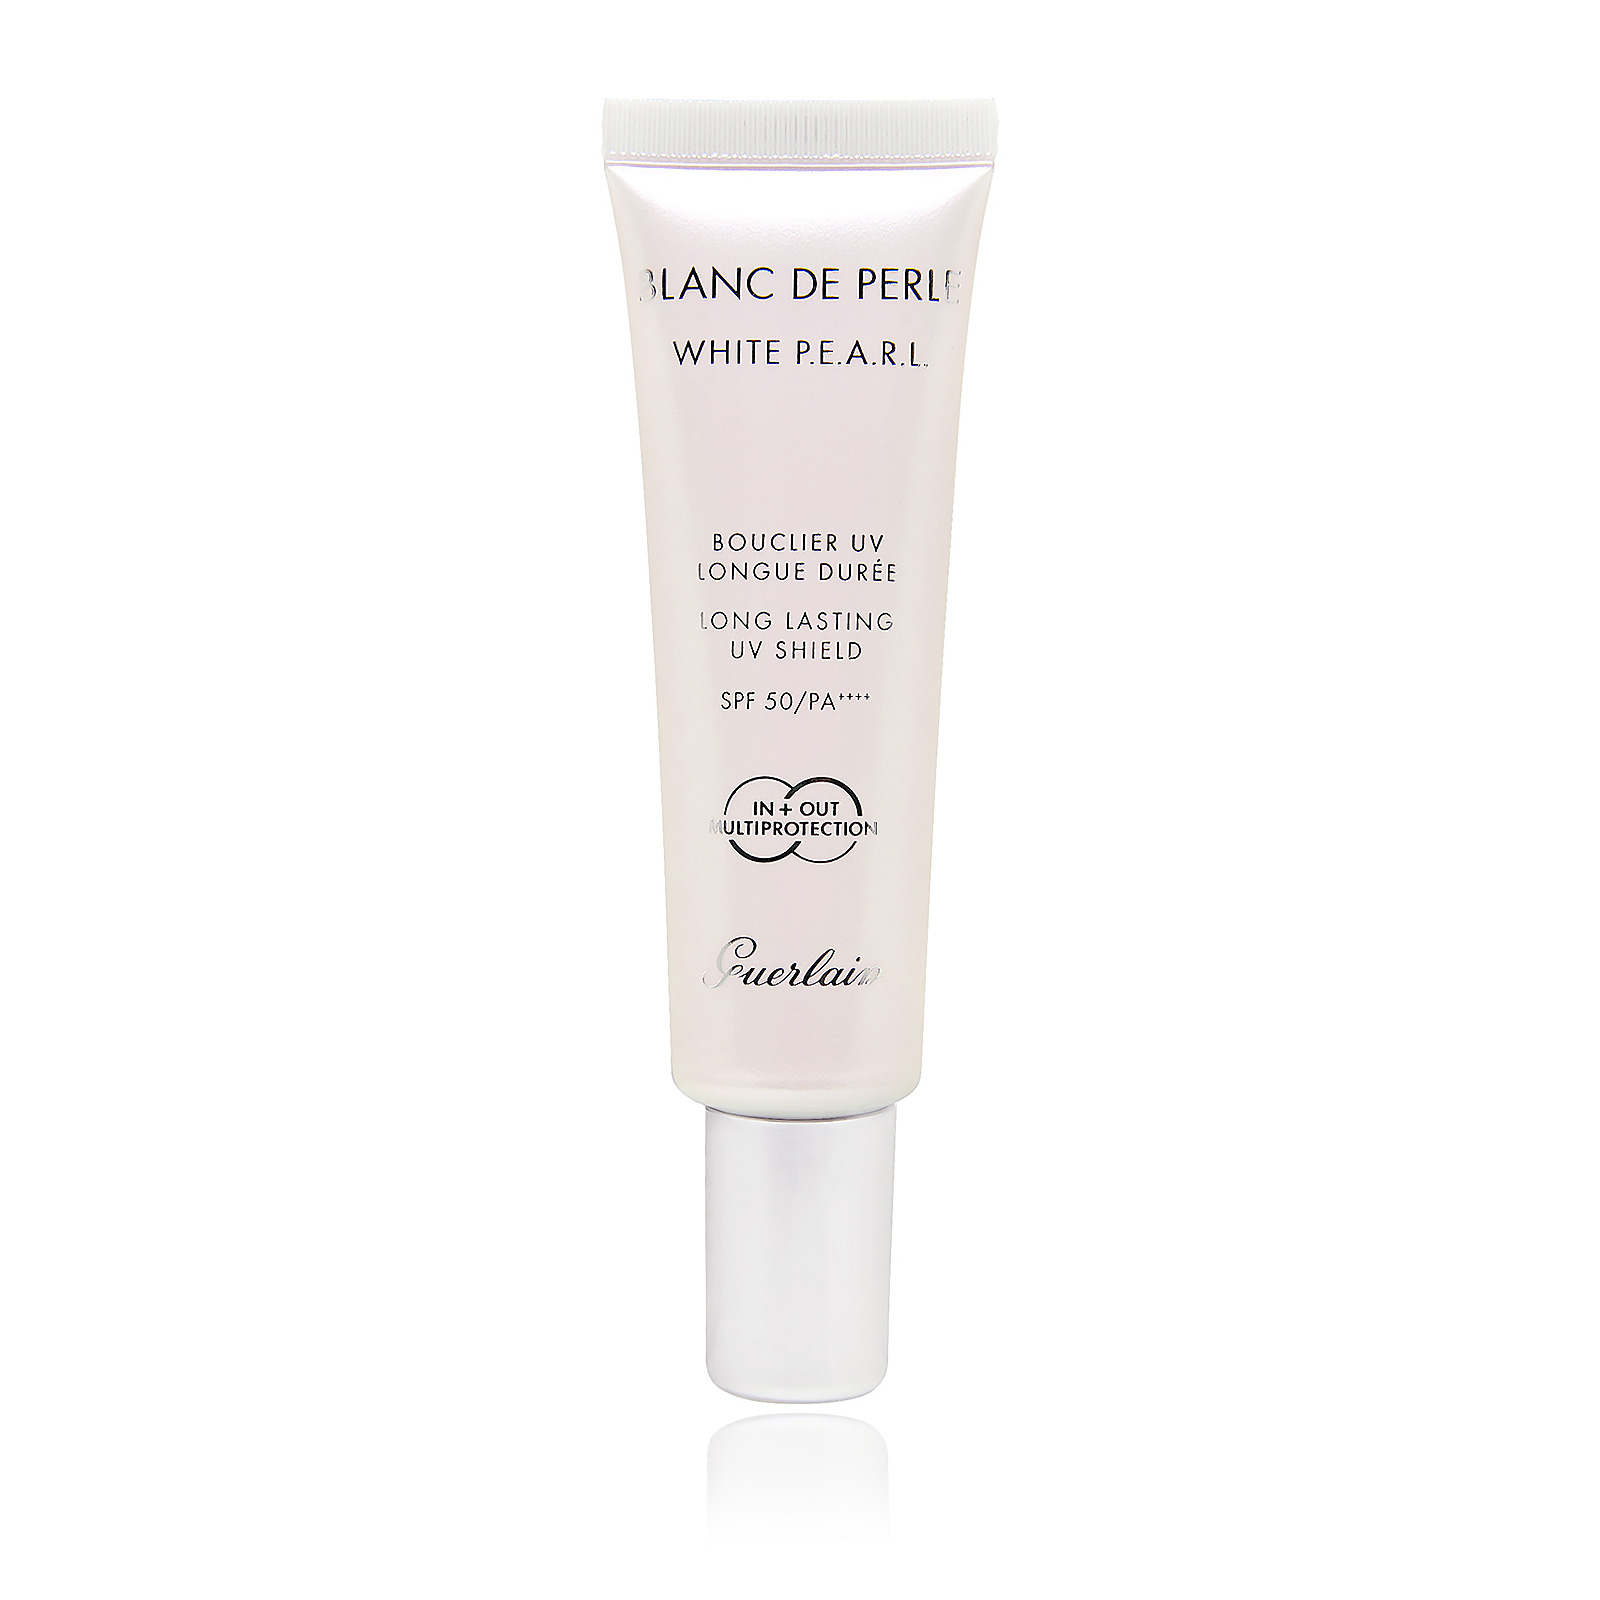 Blanc De Perle White PEARL Long Lasting UV Shield SPF 50 PA++++